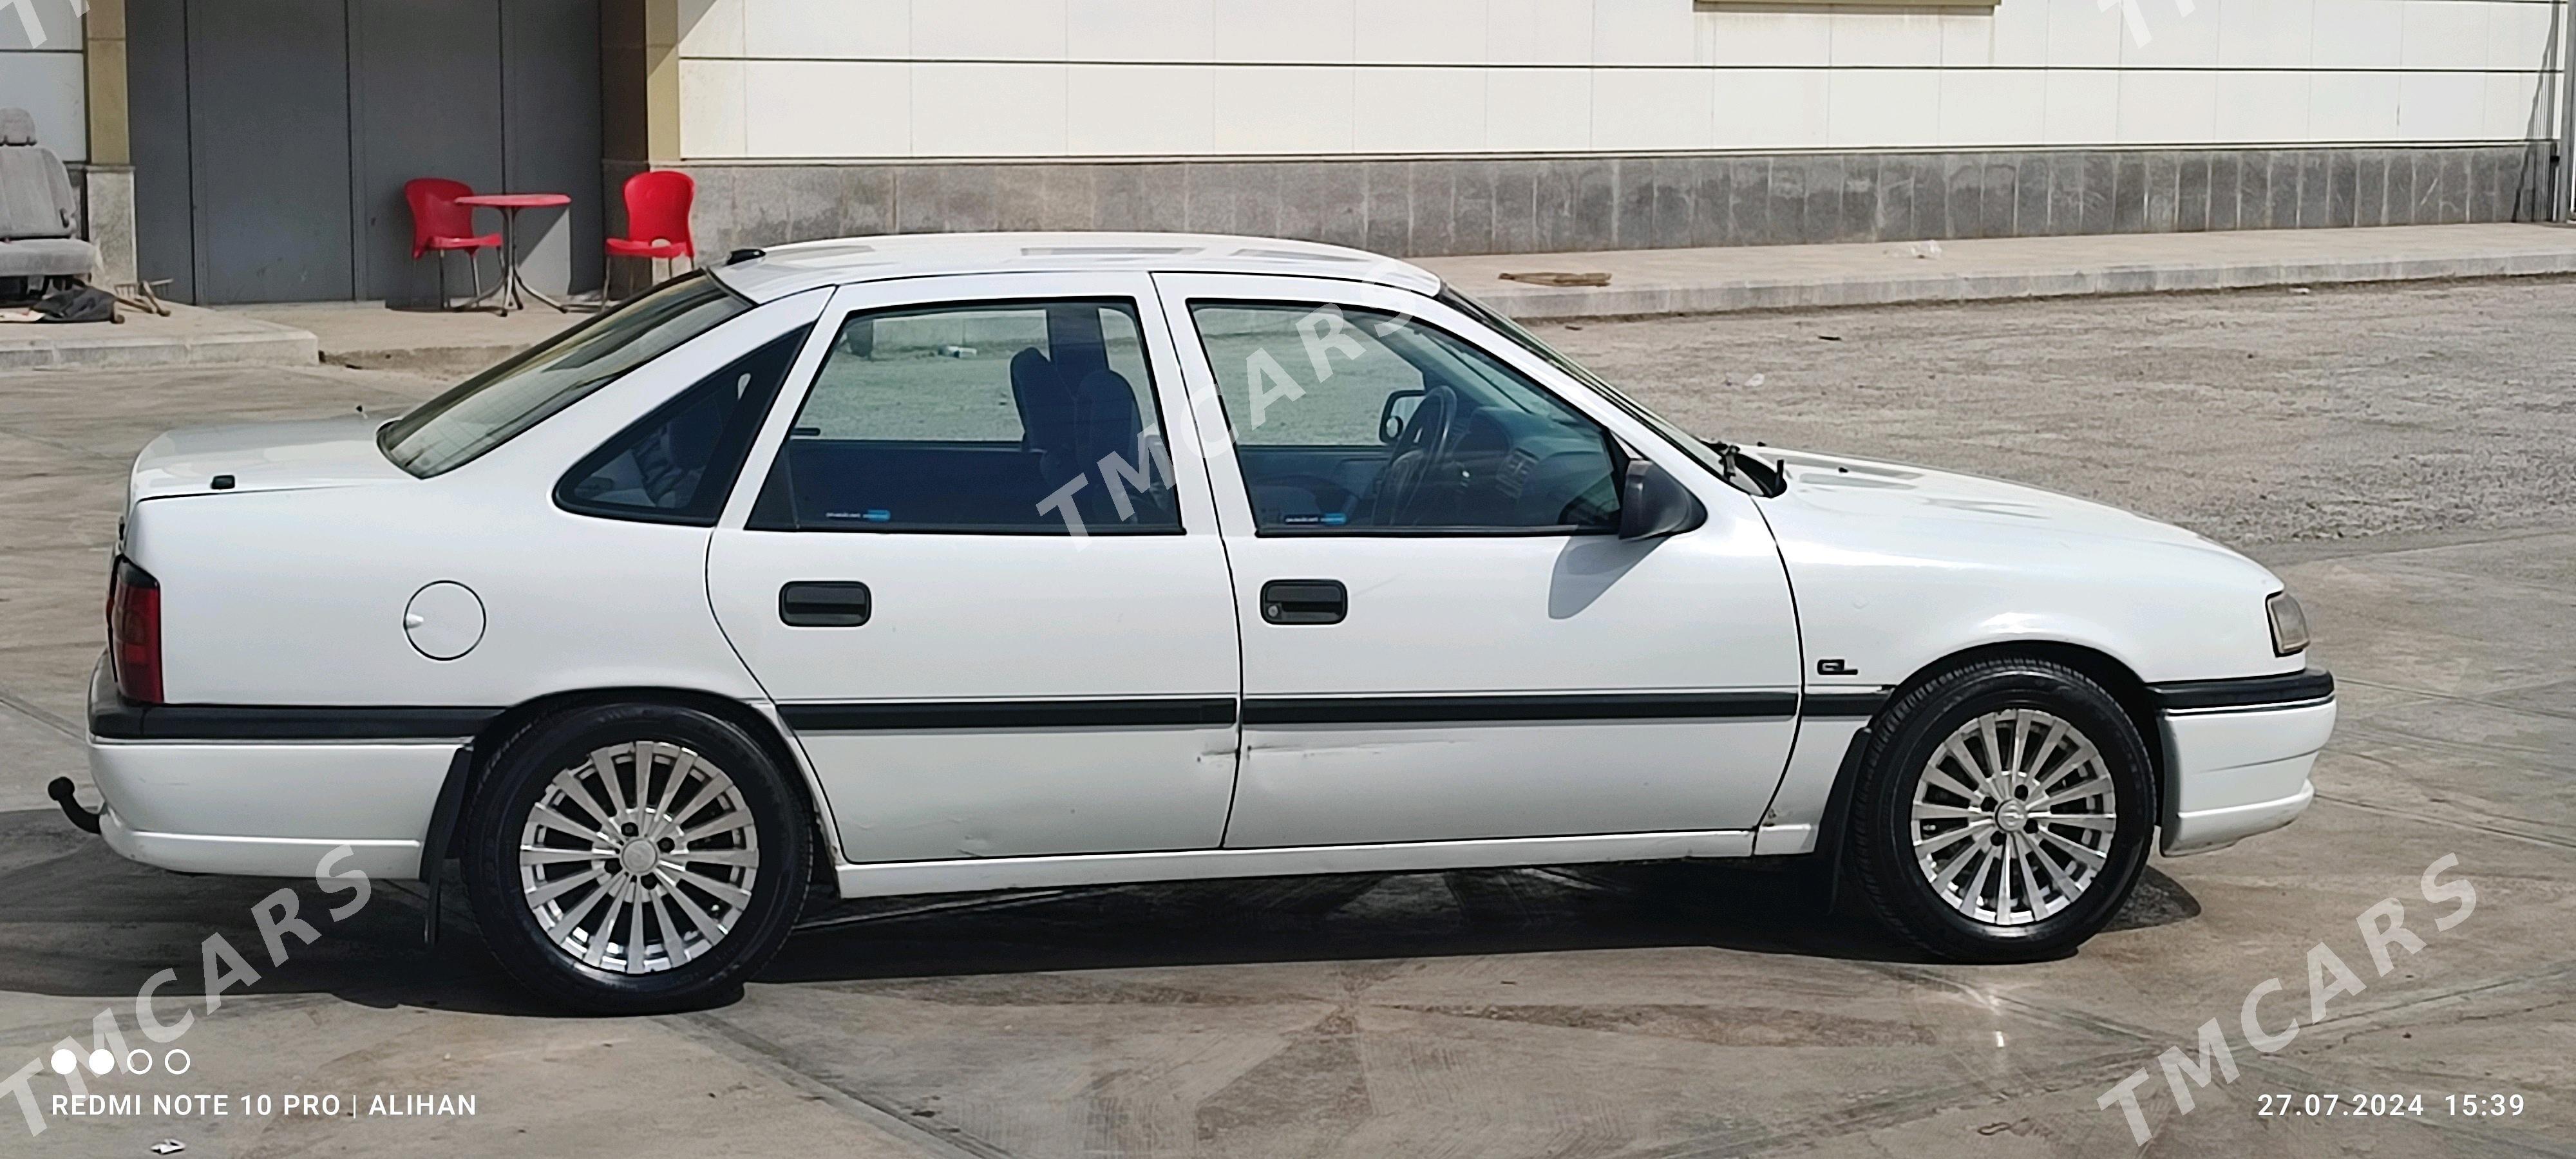 Opel Vectra 1993 - 36 000 TMT - Türkmenabat - img 2